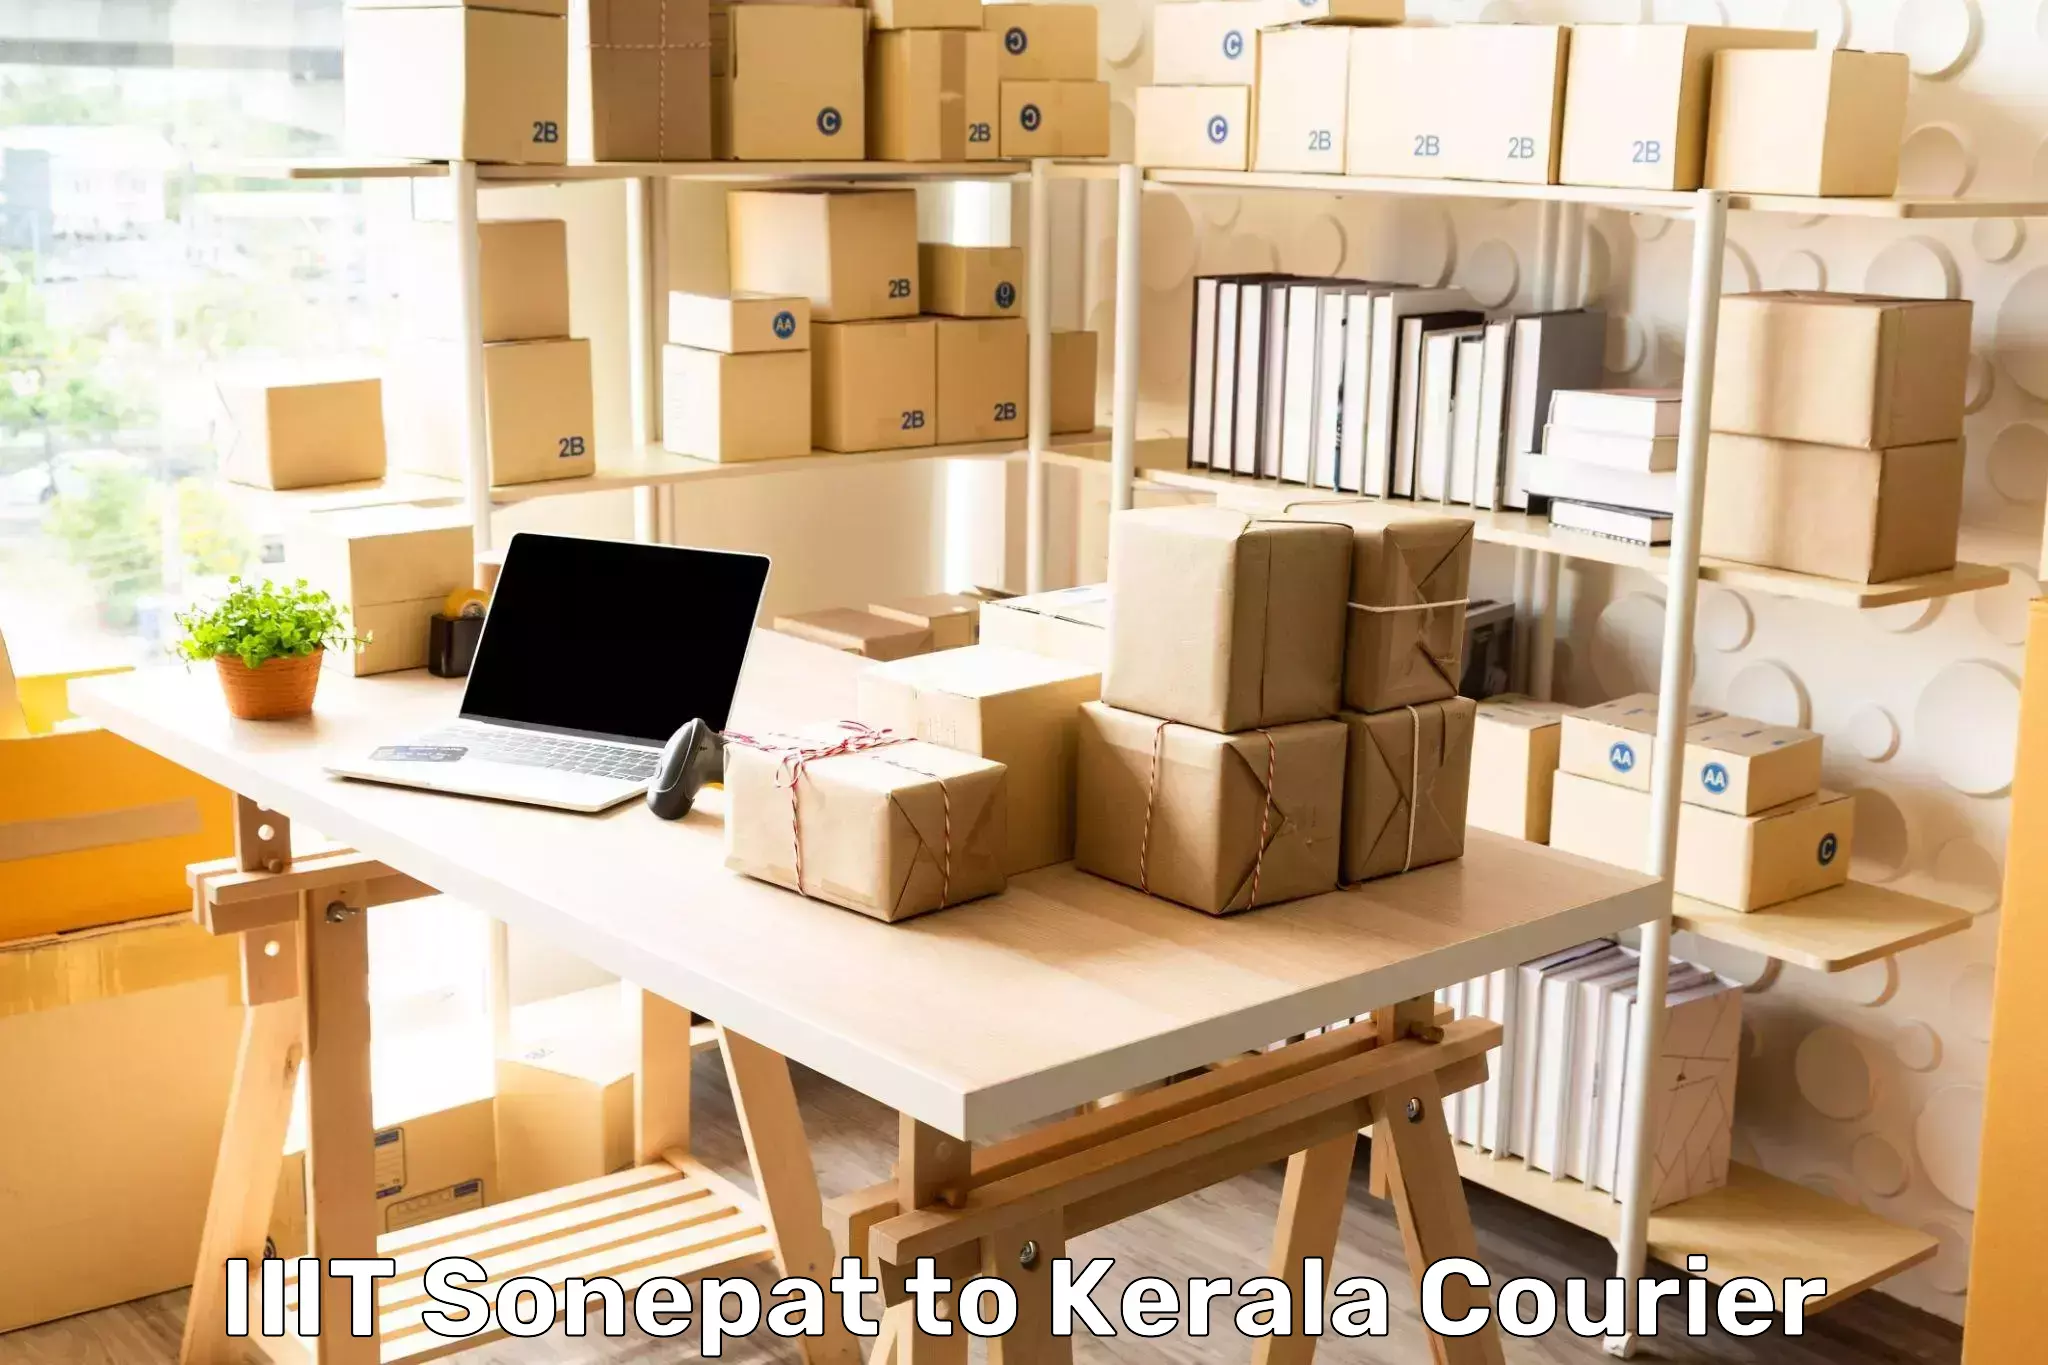 Business shipping needs IIIT Sonepat to Kerala